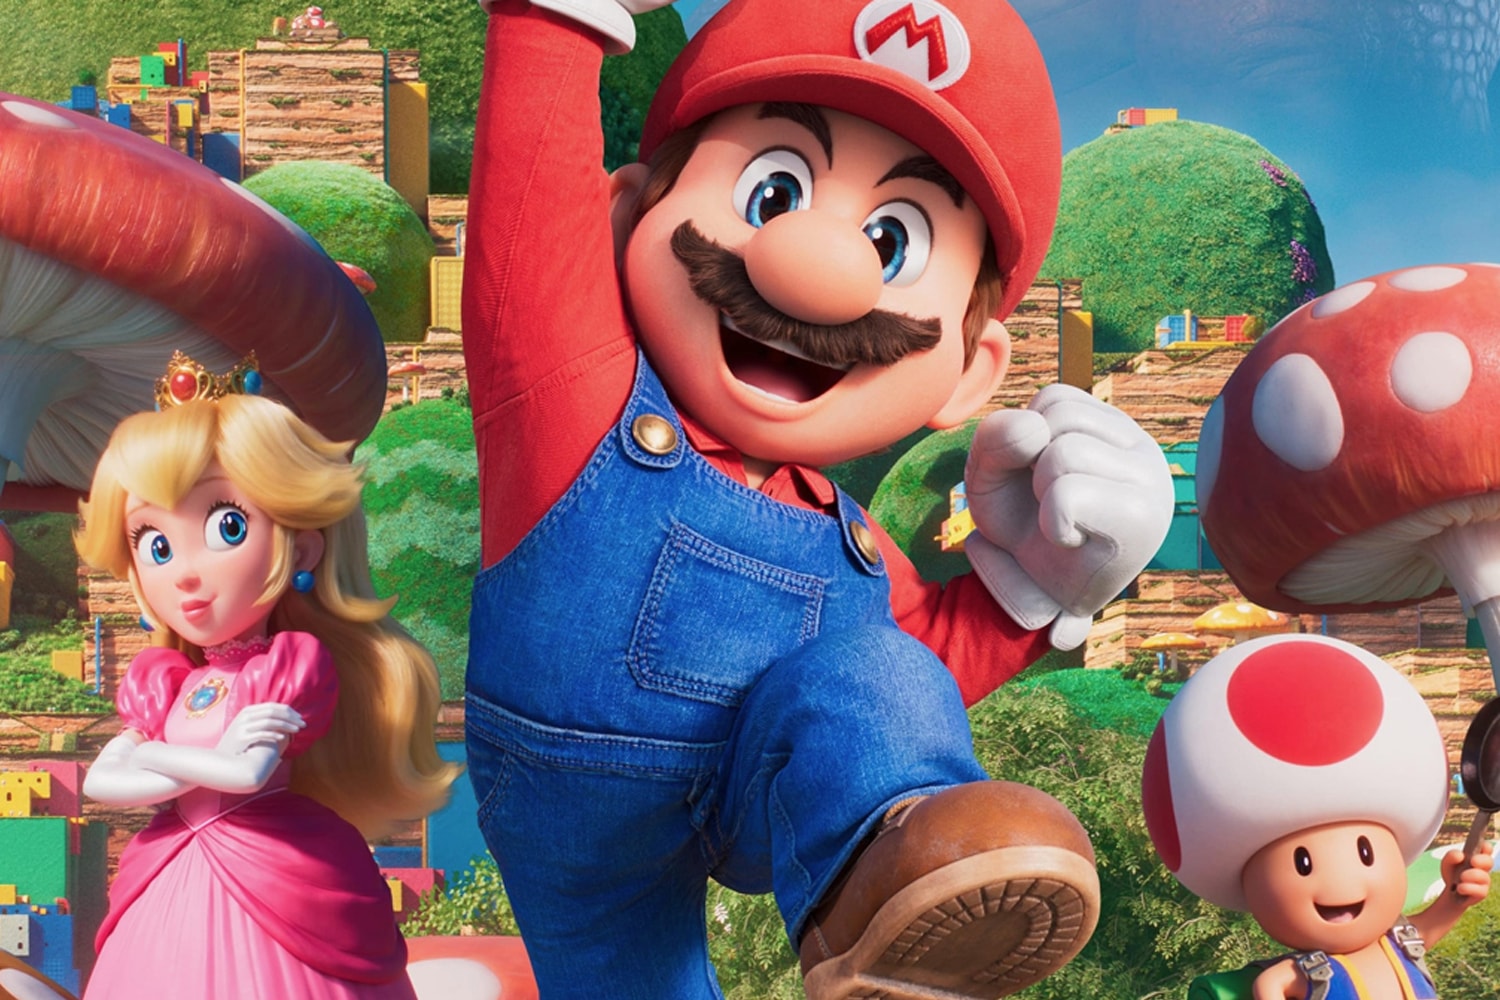 超級瑪利歐兄弟電影版《The Super Mario Bros. Movie》全球票房正式突破 $10 億美金大關